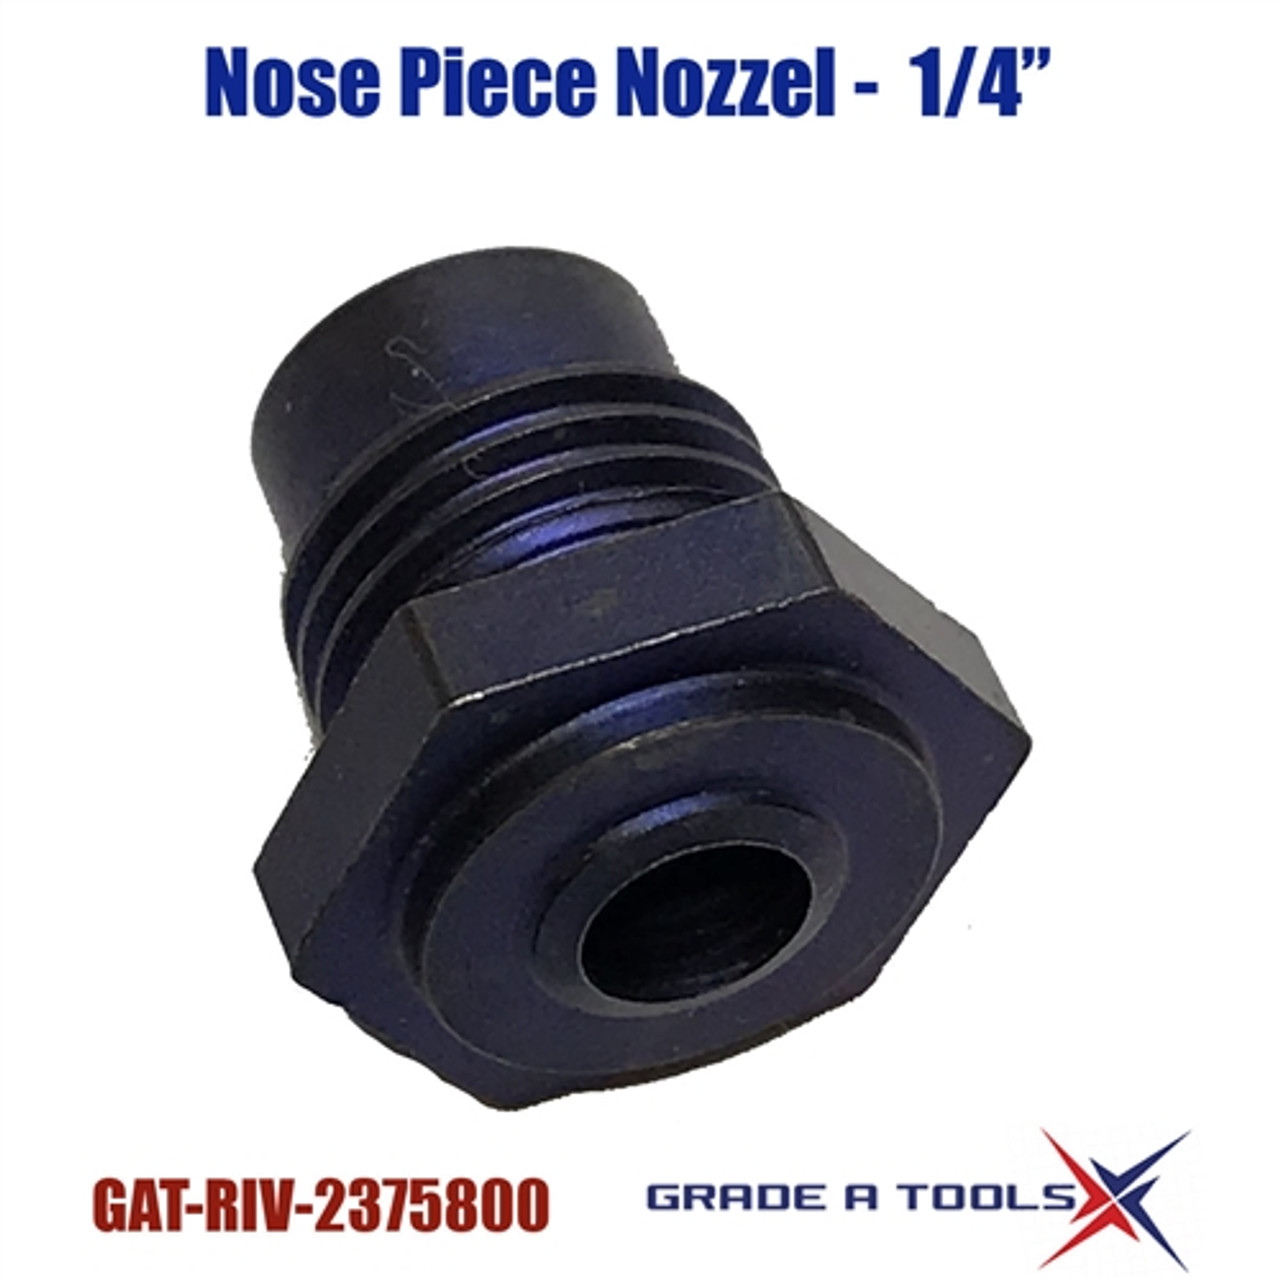 Nose Piece - Nozzle for RIV508-FGM